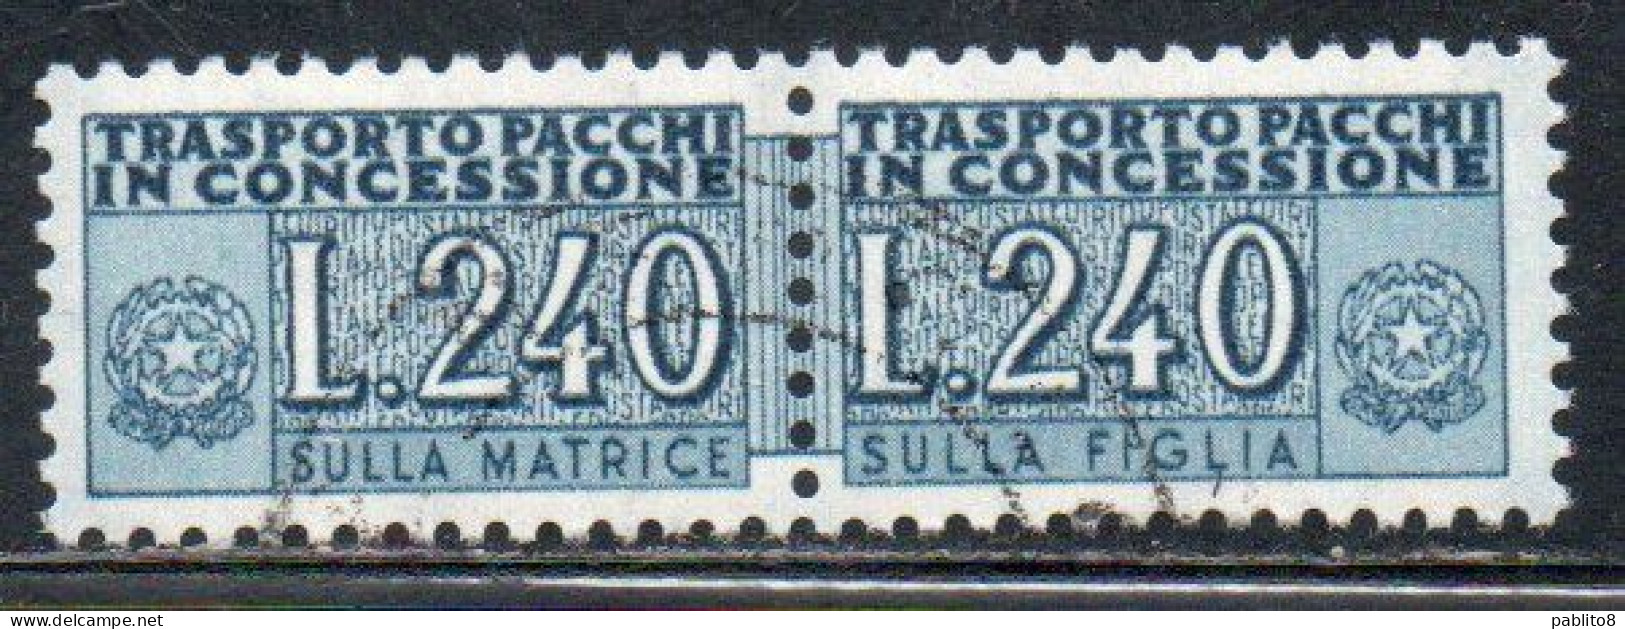 ITALIA REPUBBLICA ITALY REPUBLIC 1955 1981 PACCHI IN CONCESSIONE PARCEL POST STELLE STARS 1966 LIRE 240 USATO USED - Colis-concession